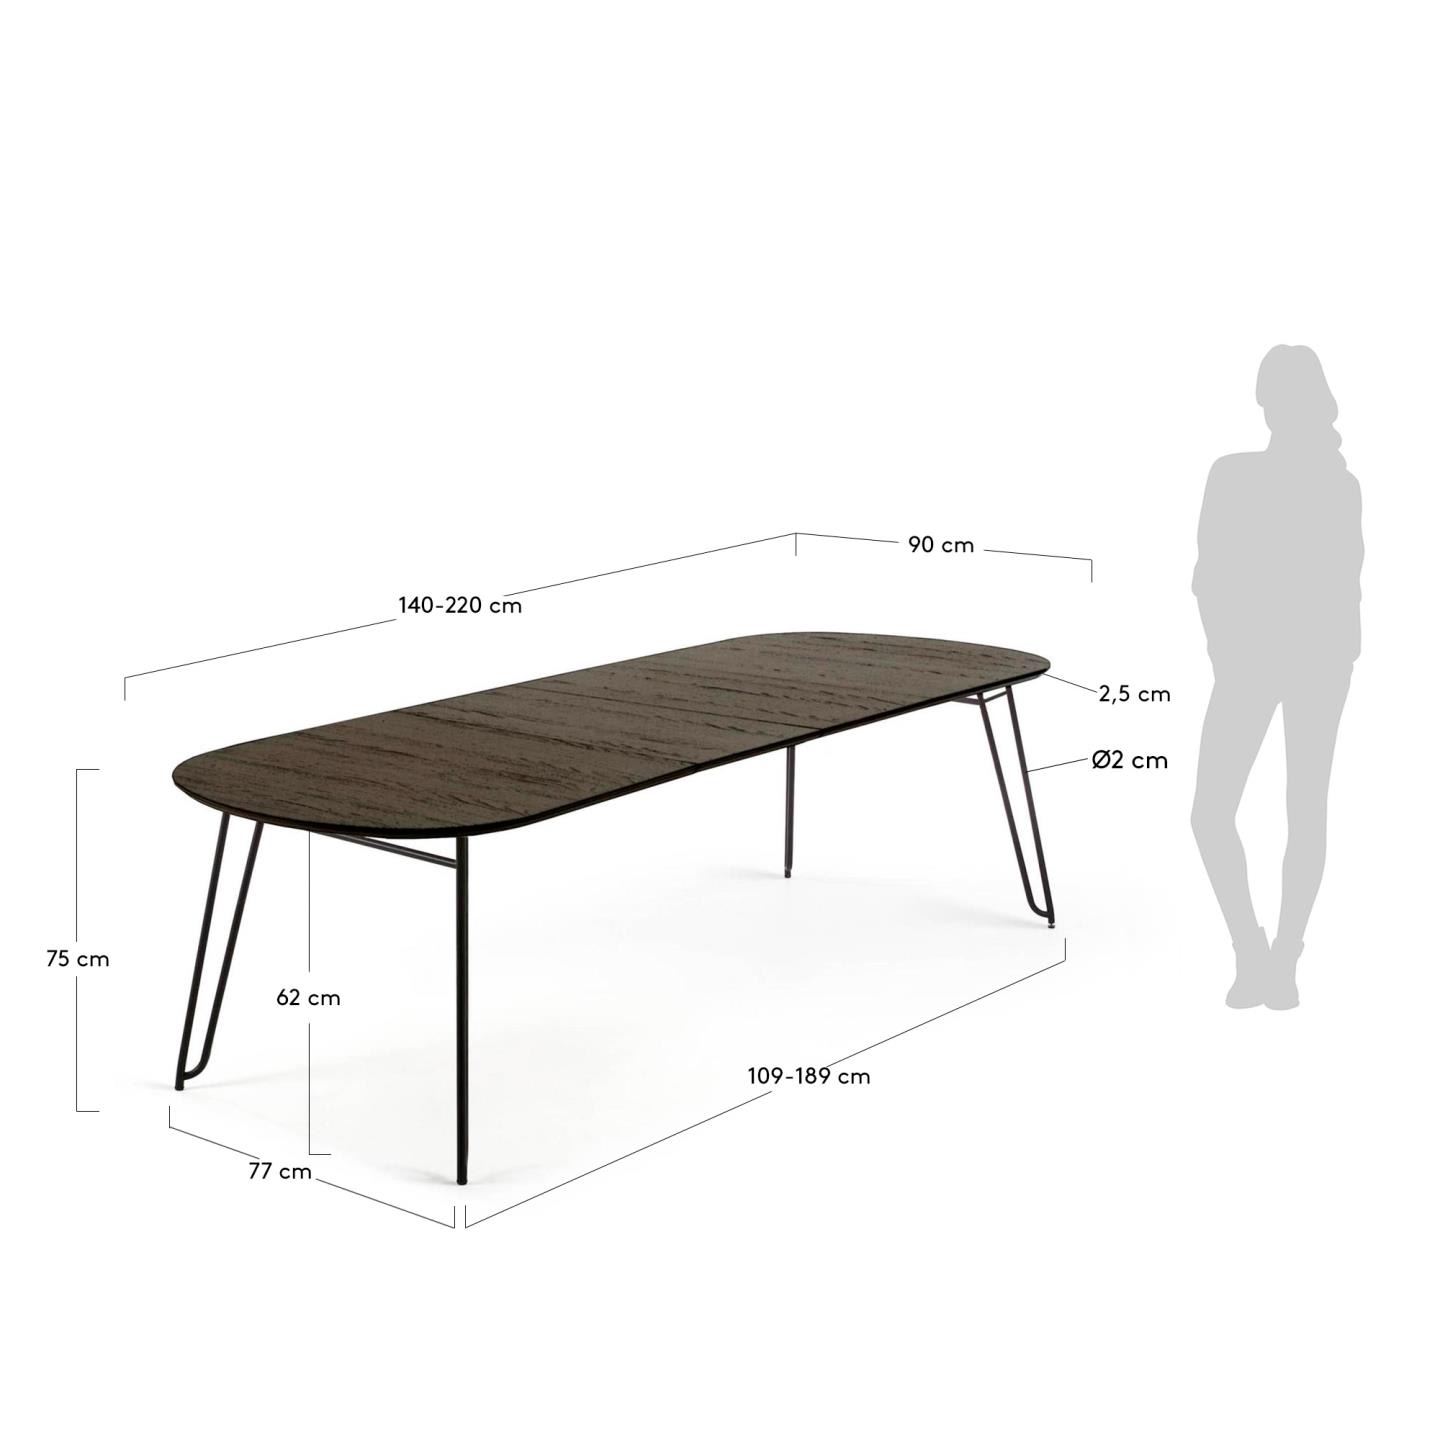 밀란 애쉬 라운드 확장형 테이블 (타원형/90x140-220cm) - 크기